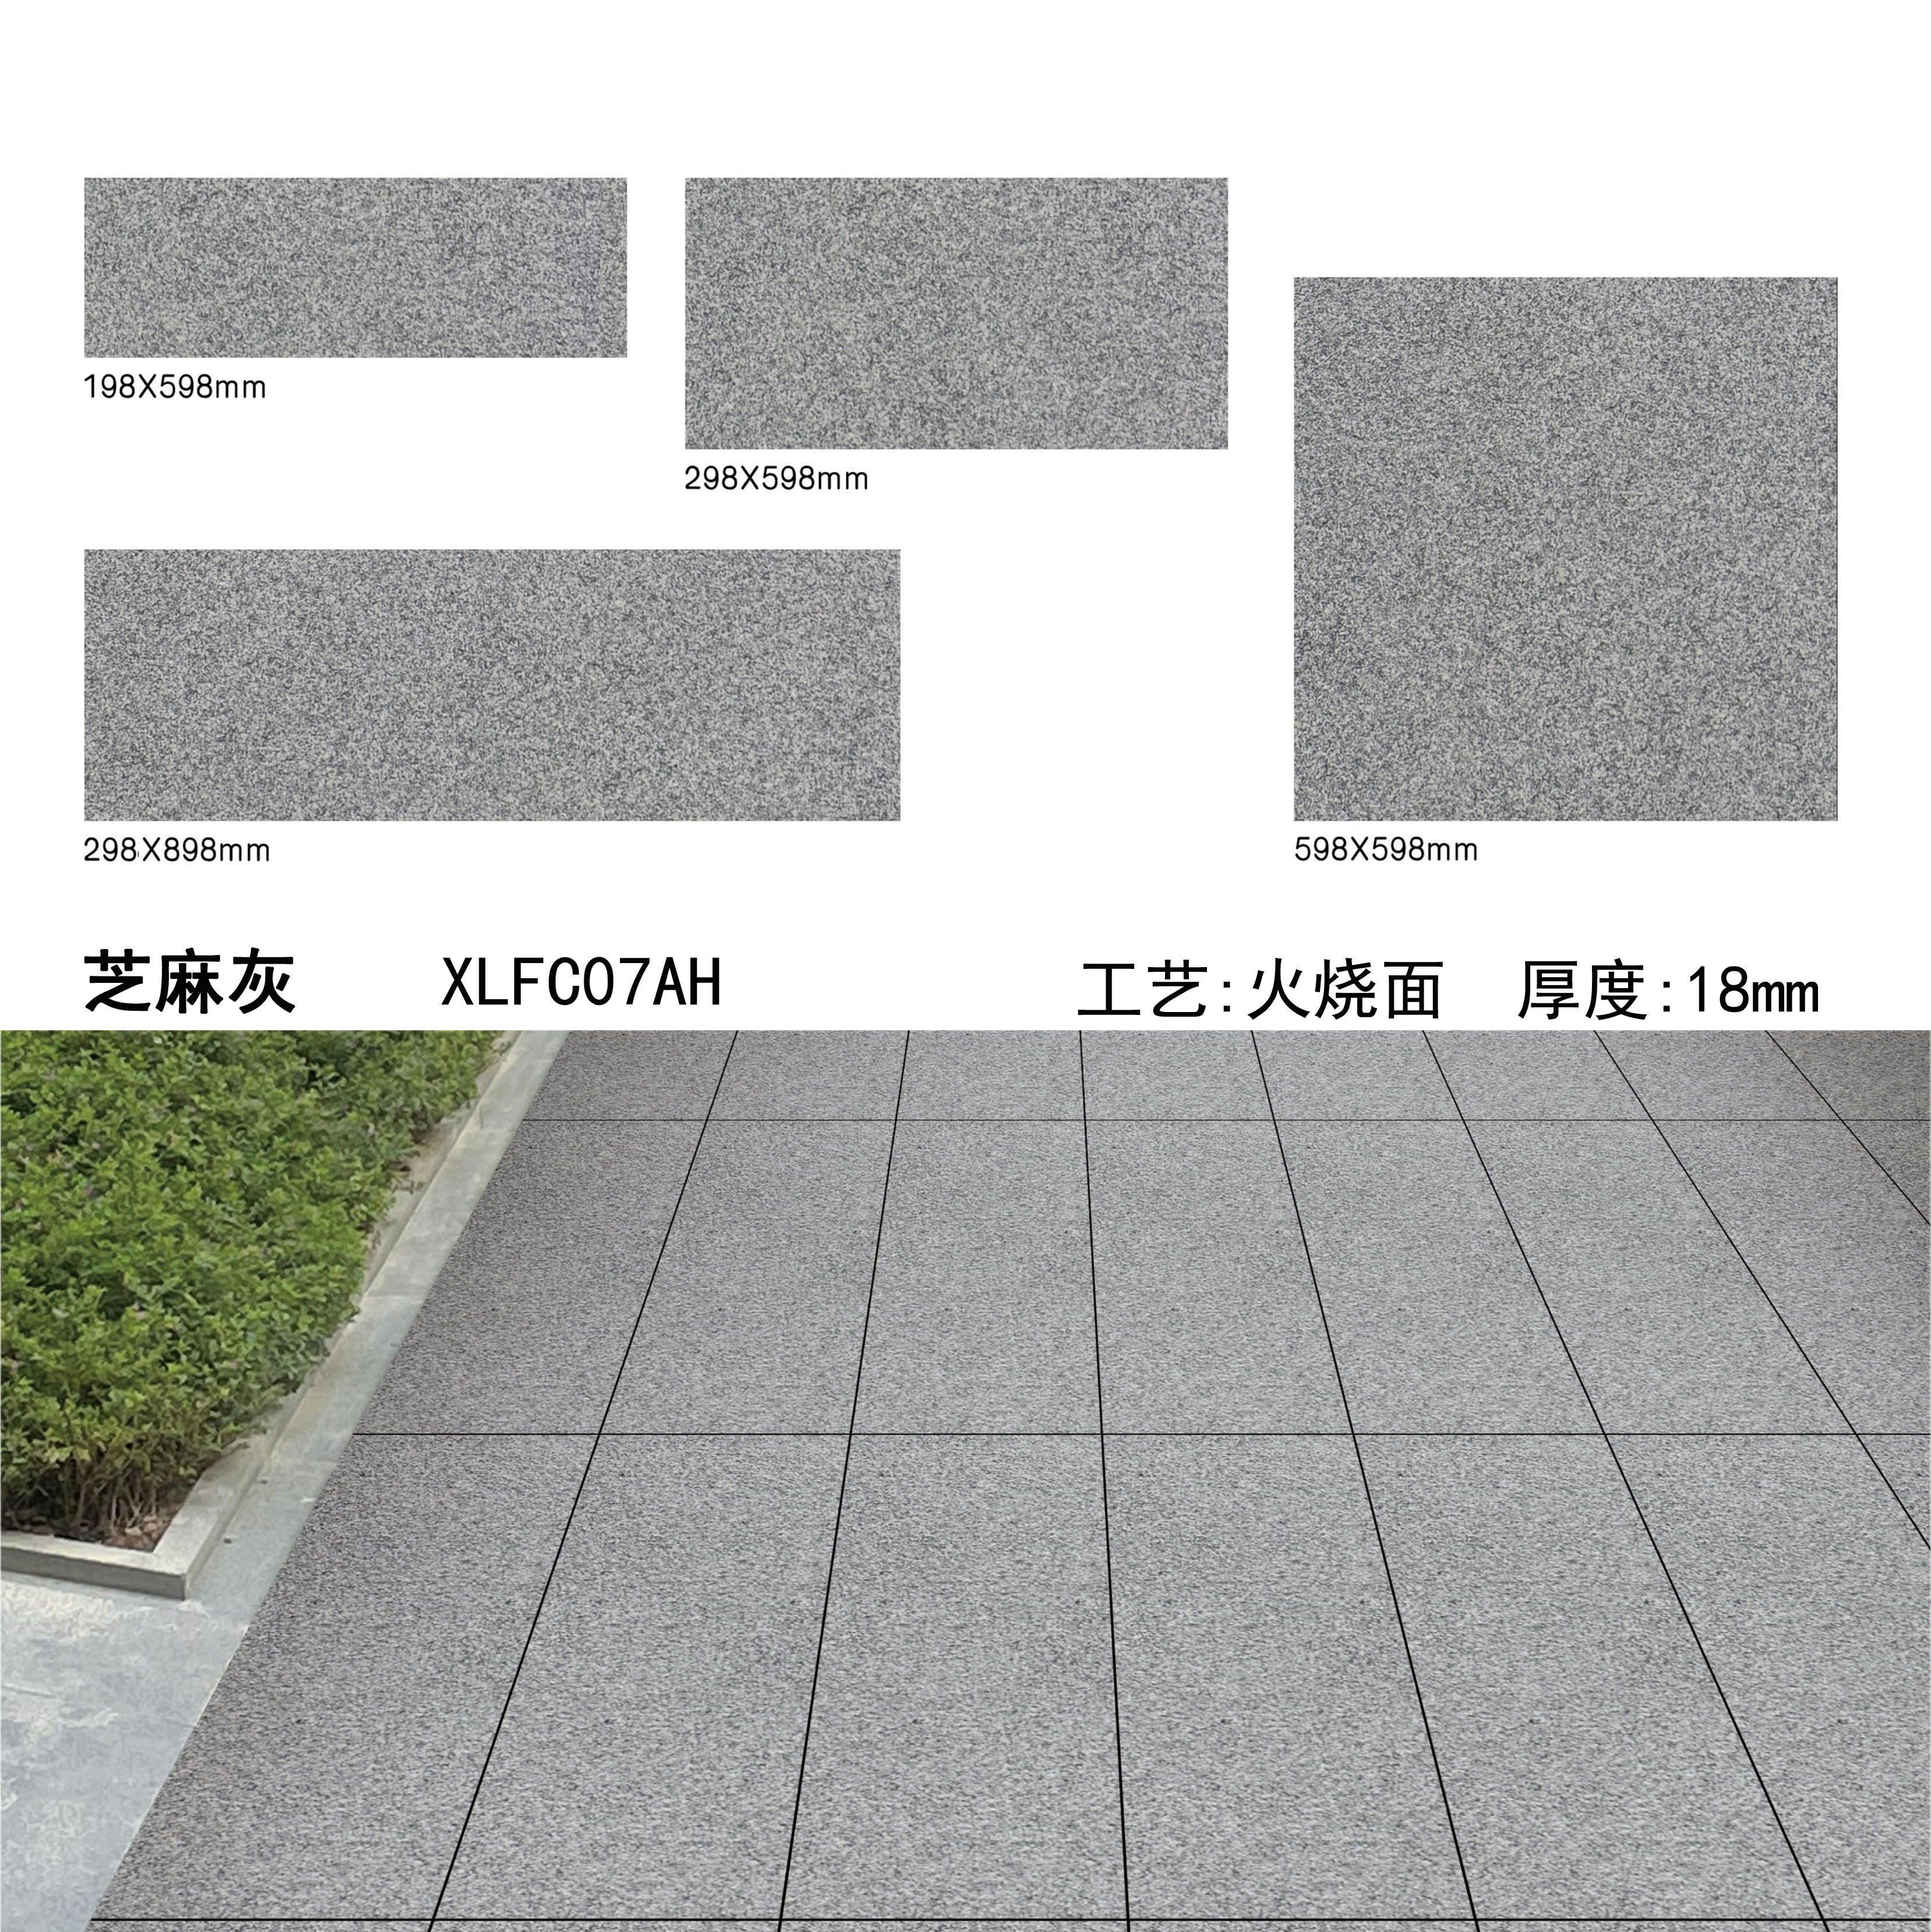 芝麻灰PC砖（07AH）-南安市欣龙建材发展有限公司